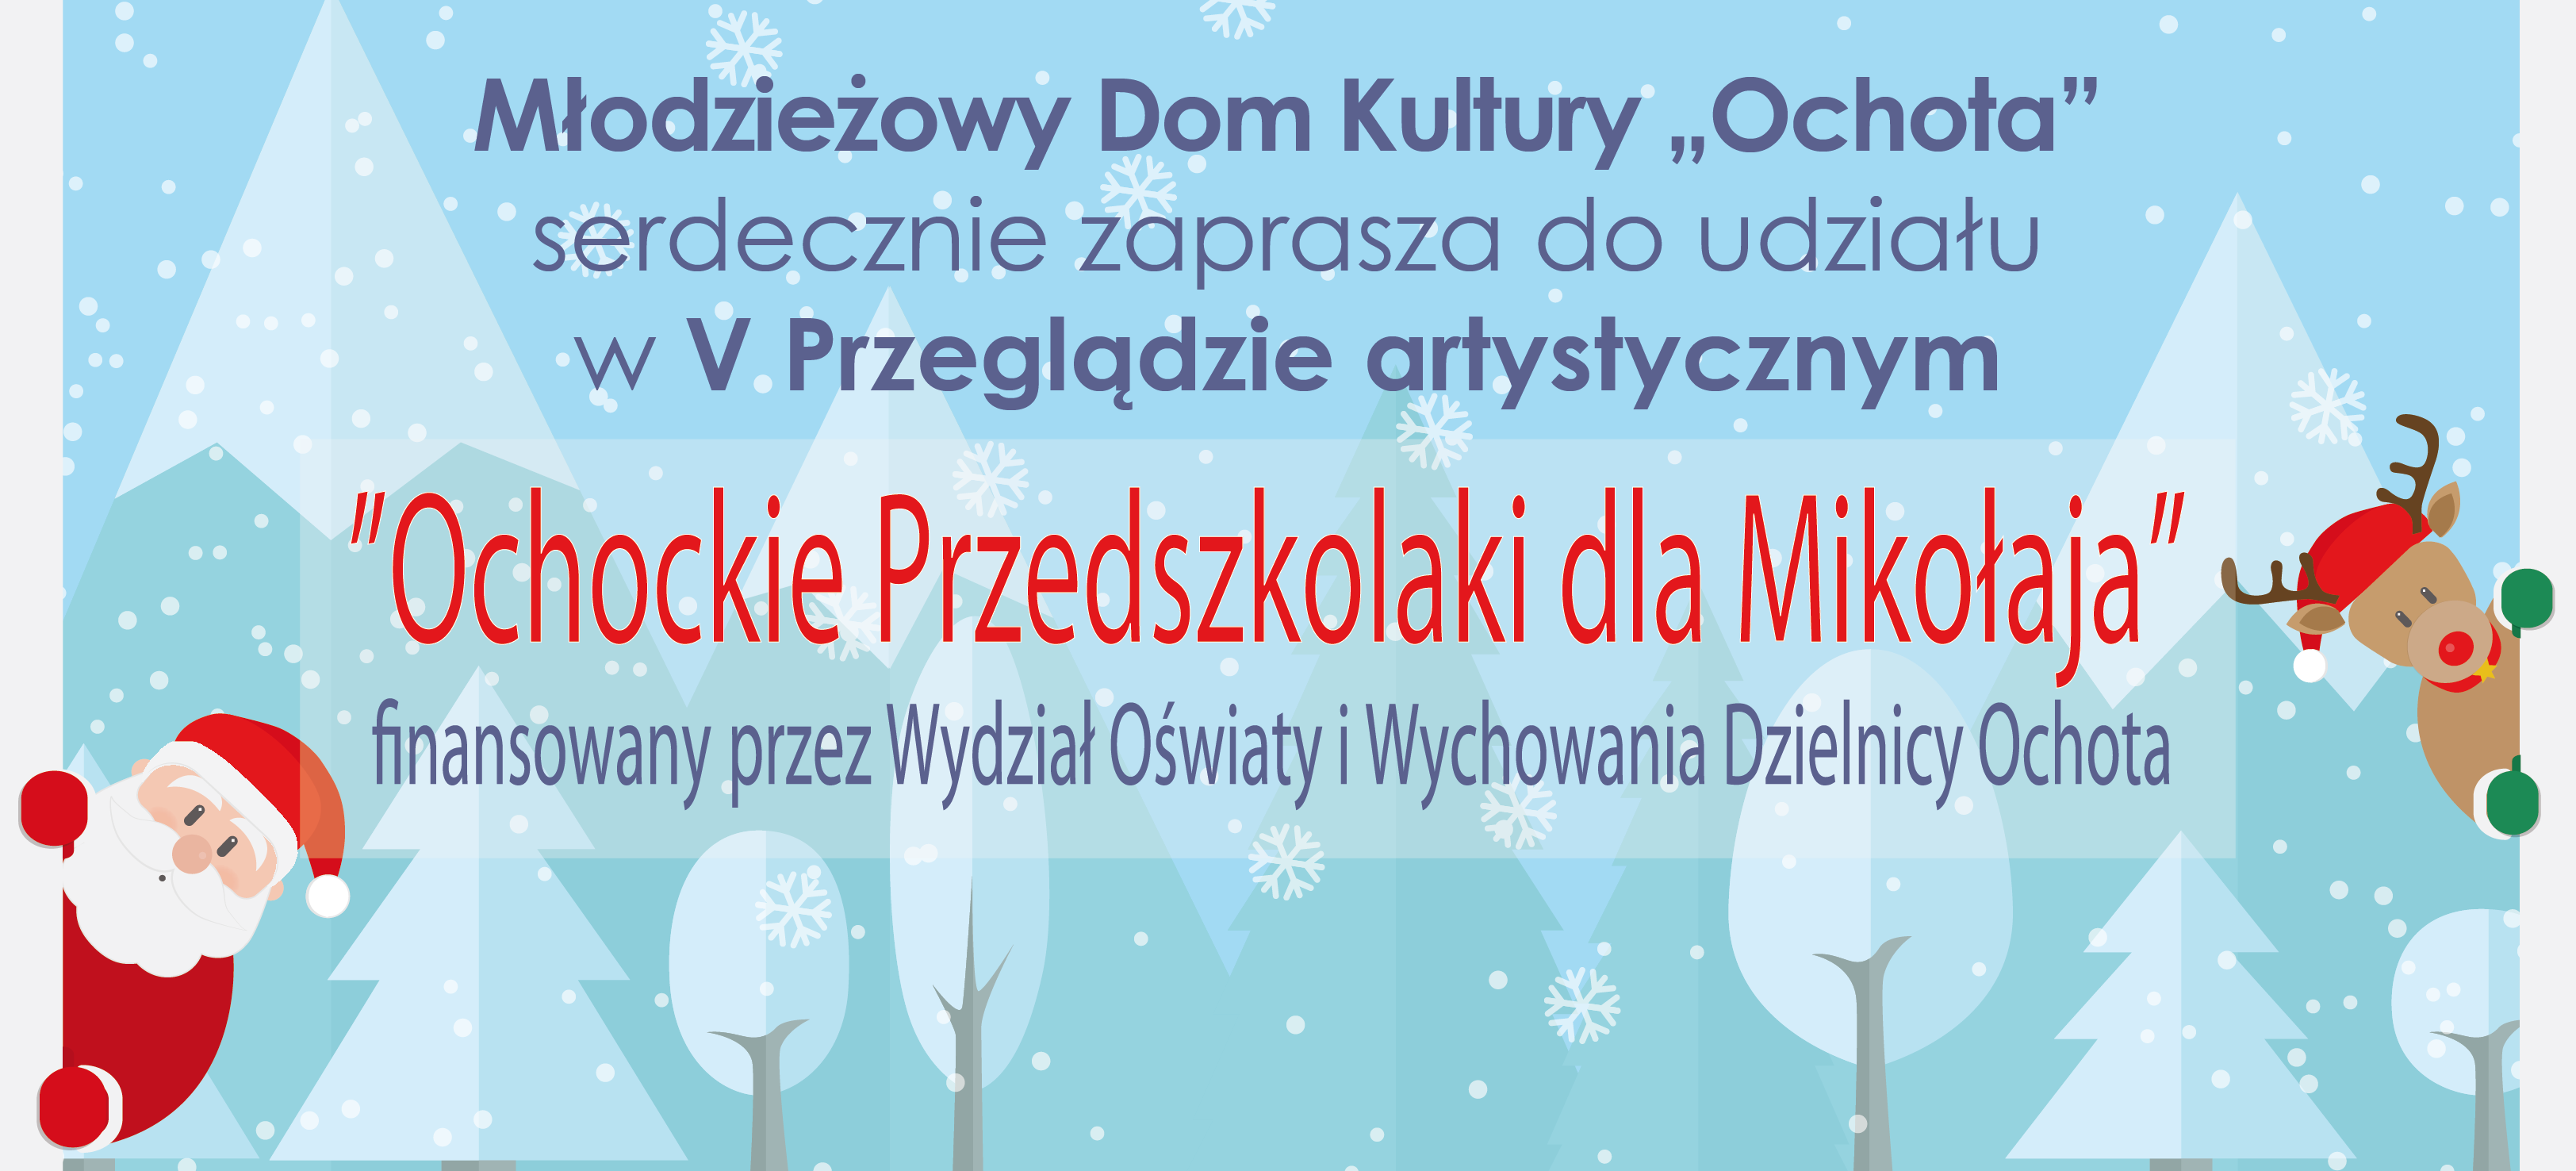  PLAKAT www Przegld Ochockie Przedszkolaki dla Mikoaja 2021